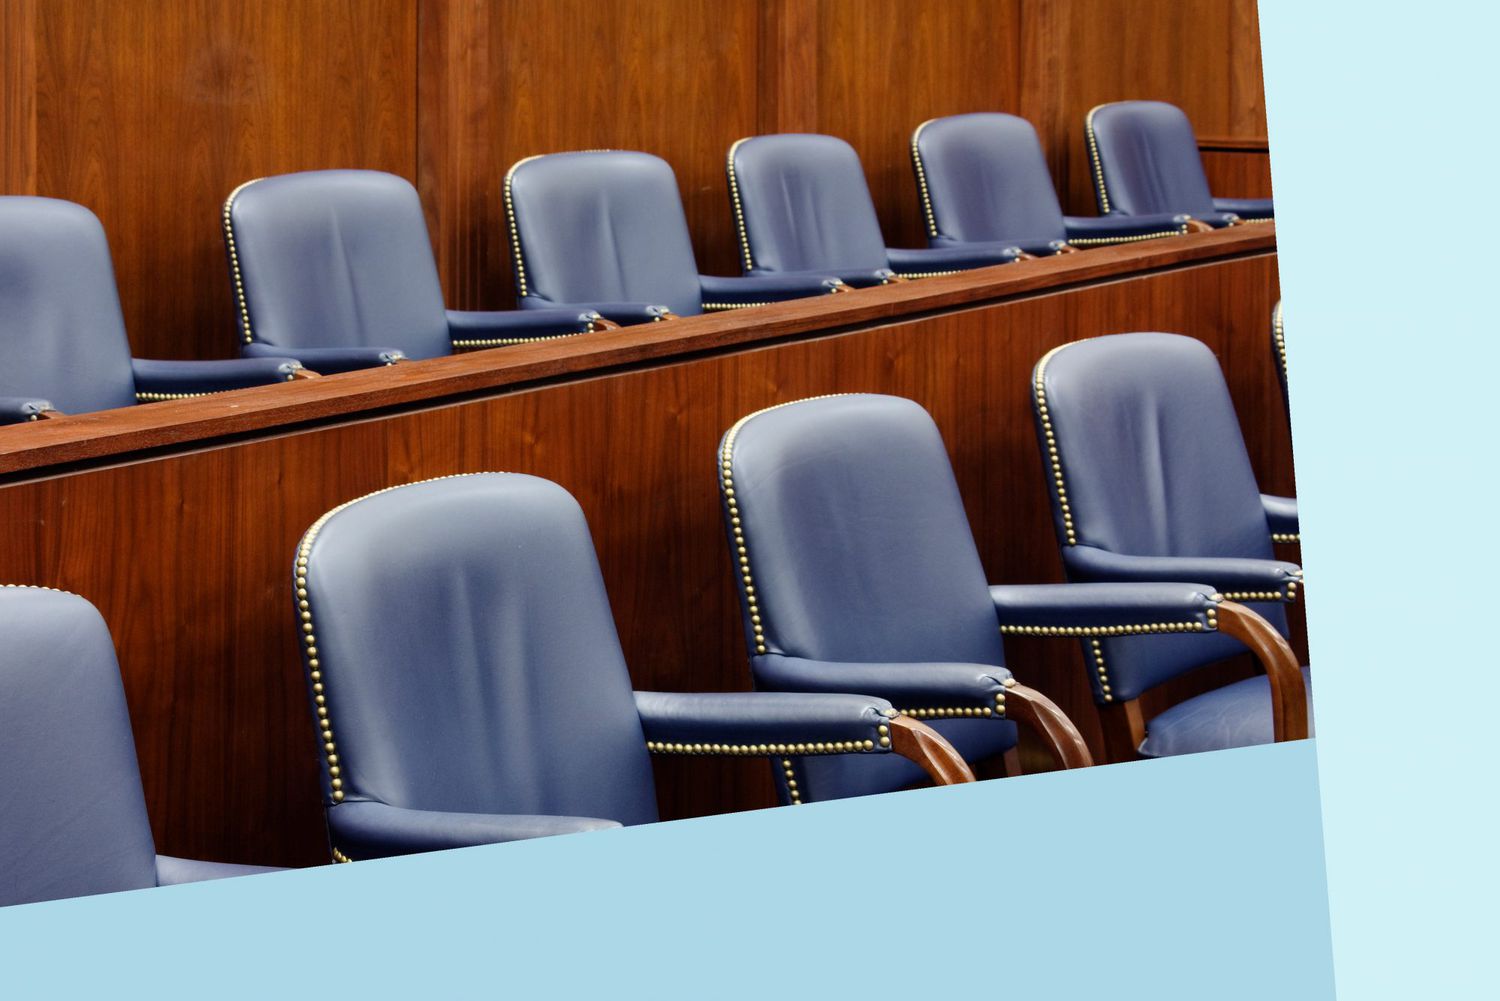 An image of jury seats.